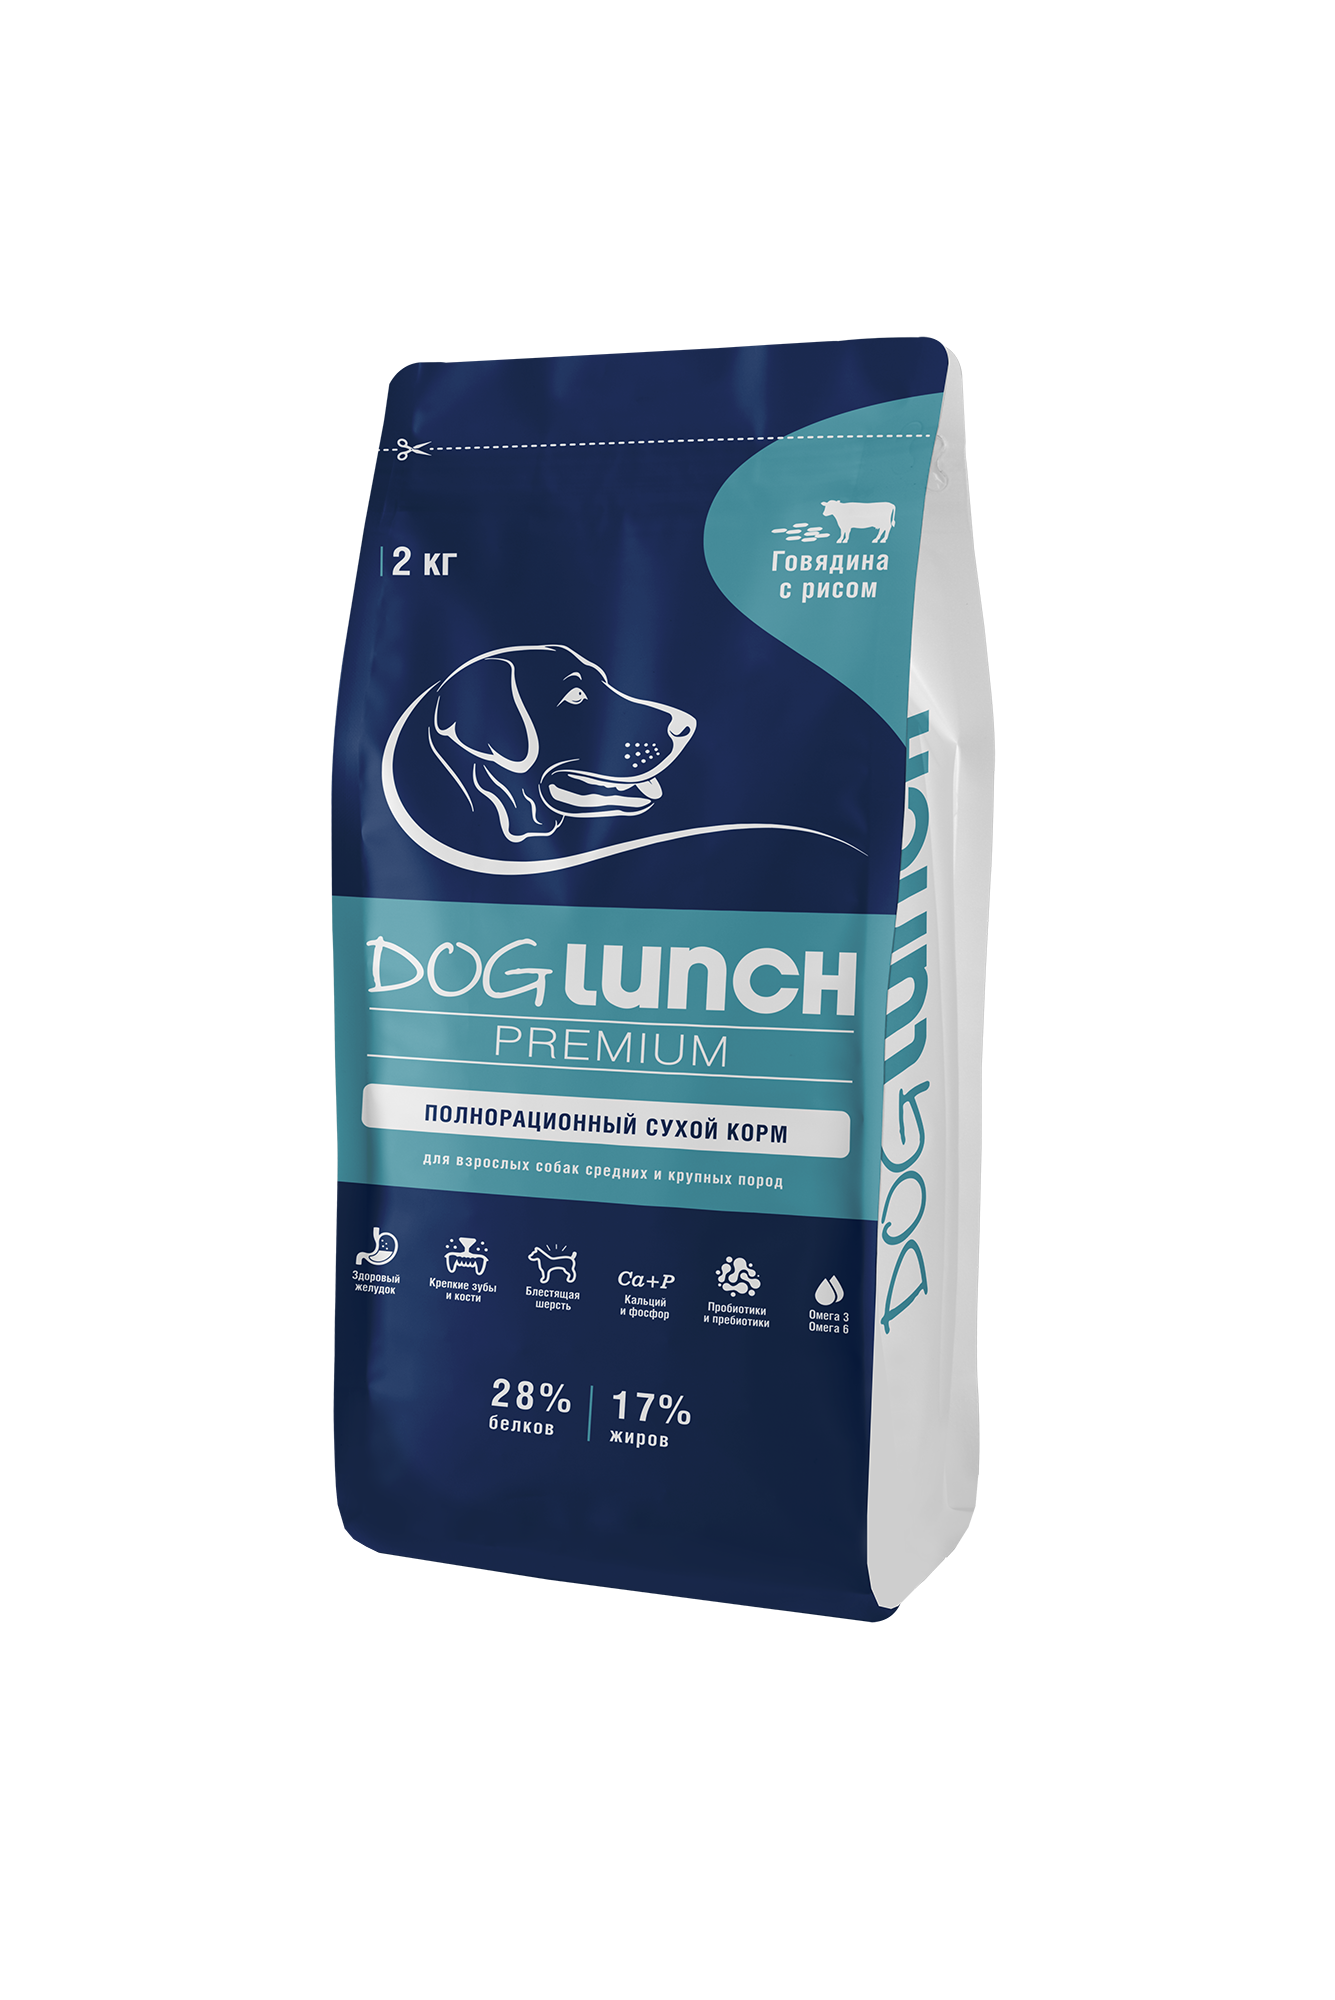 Сухой корм для собак DogLunch Premium говядина и рис, для средних и крупных пород, 2 кг